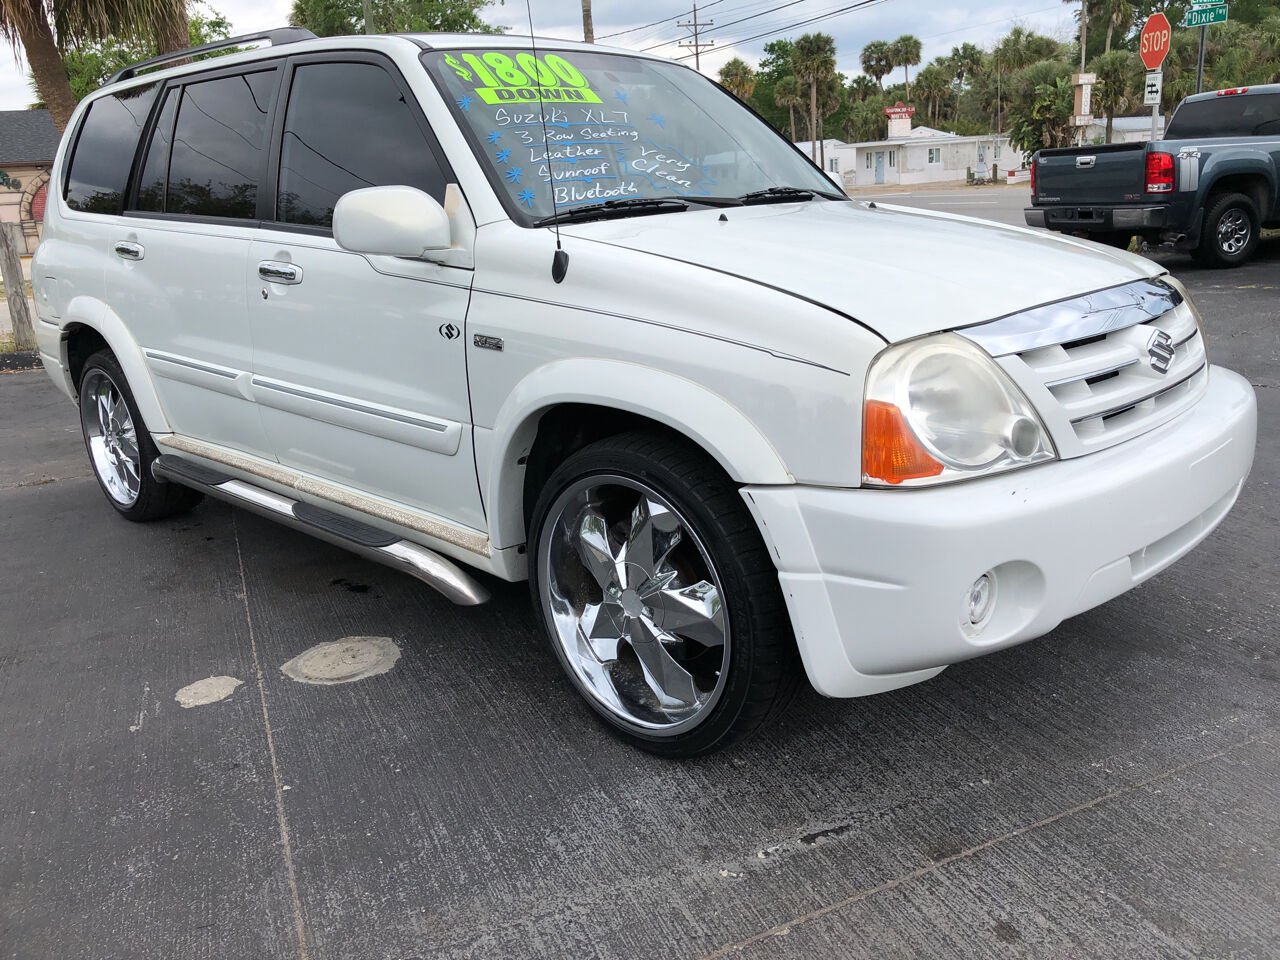 Suzuki XL7 For Sale In Florida - Carsforsale.com®